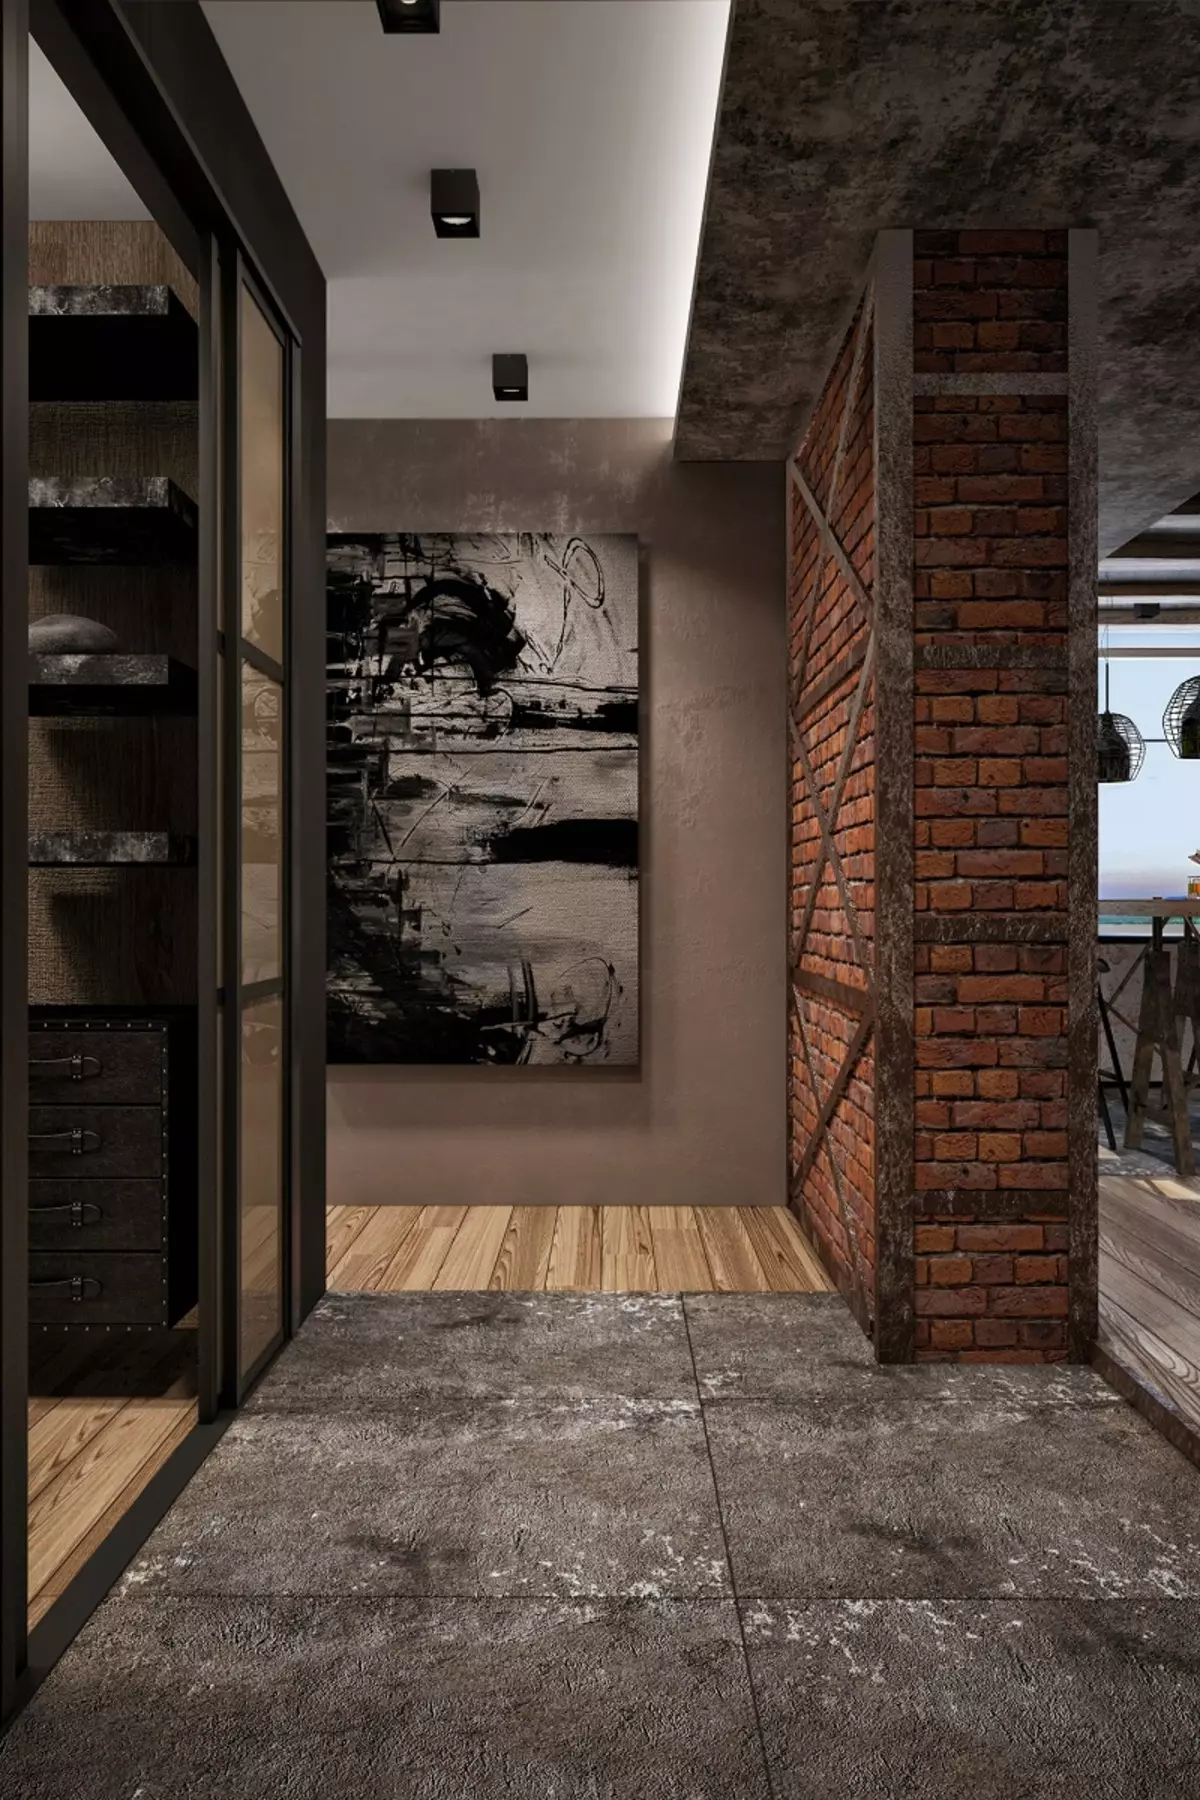 Loft风格的入口大厅（76张照片）：衣架和家具在一个小走廊的内部，走廊设计与砖墙，选择长凳和衣柜 9088_22